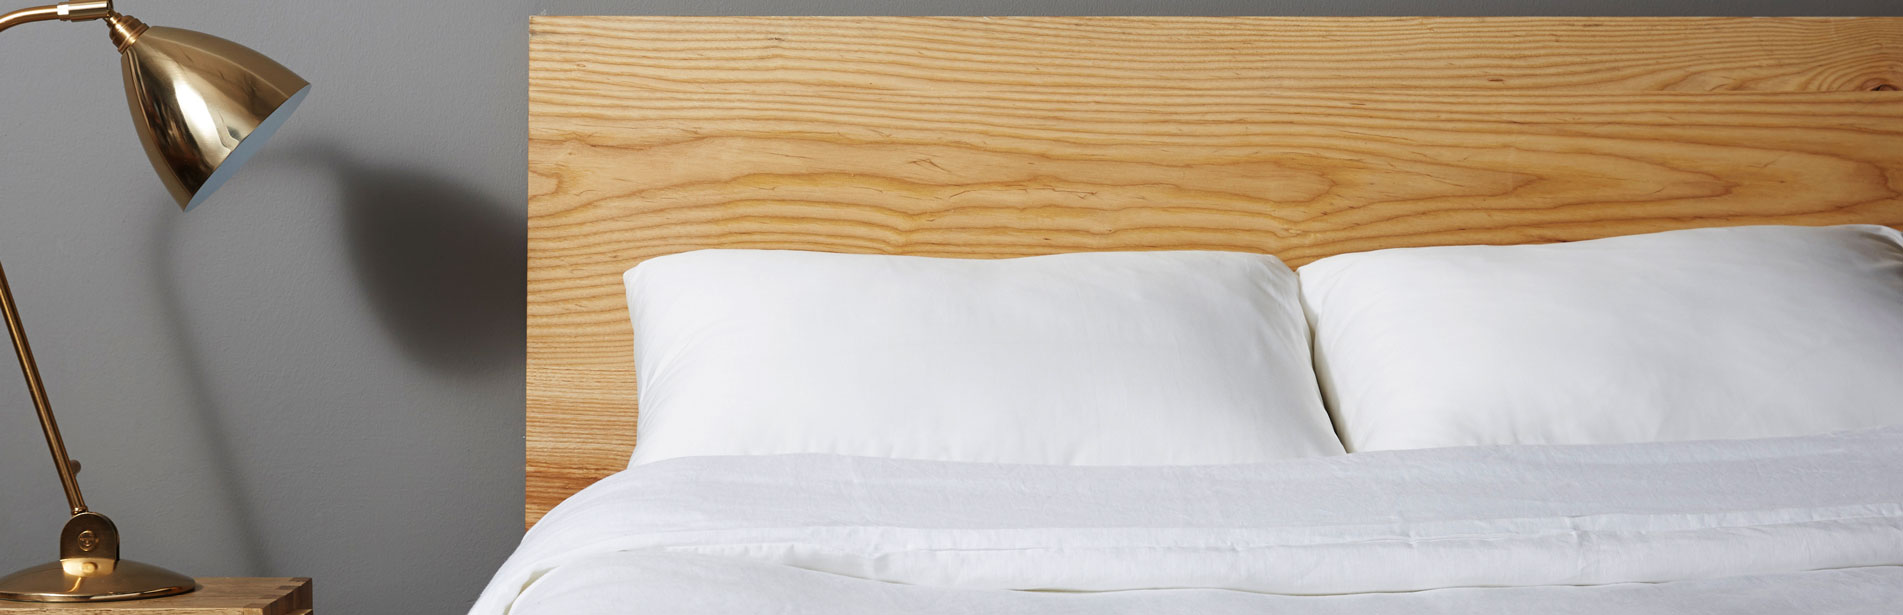 https://sleep-reviews.com/wp-content/uploads/2021/01/sleep-reviews-best-pillows-for-back-sleepers.jpg